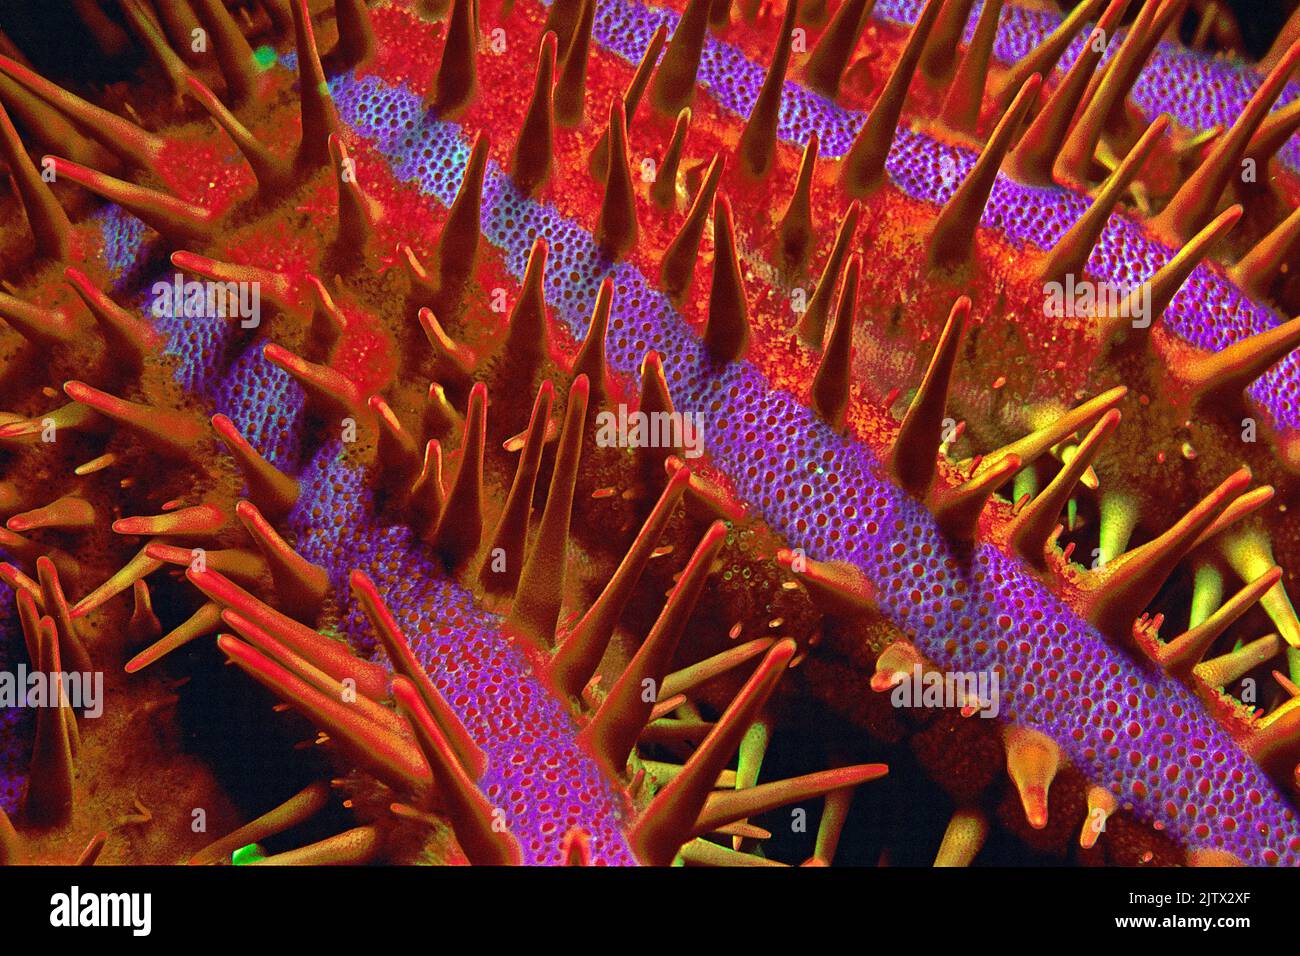 Espinas de una Corona de Espinas Starfish (Acanthaster planci), la estrella de mar es un depredador de arrecife de coral, cubierto de espinas muy agudas y venenosas, Maldivas Foto de stock